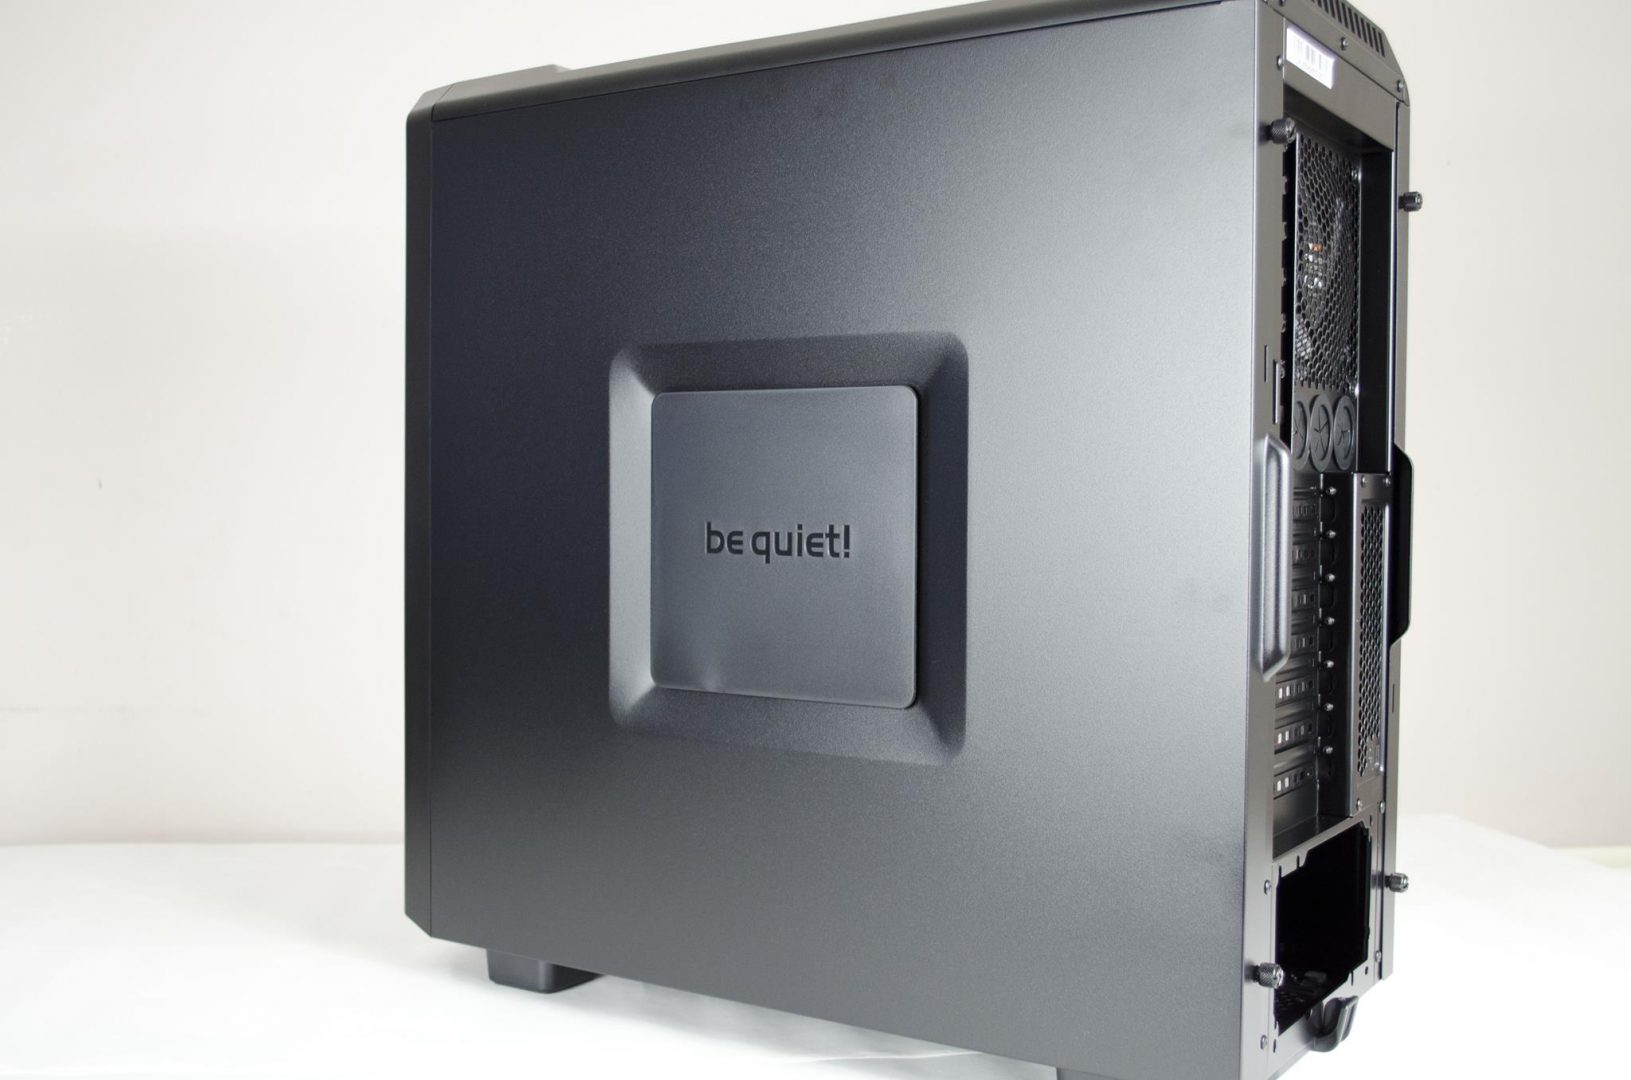 be quiet! Silent Base 600 PC Case Review